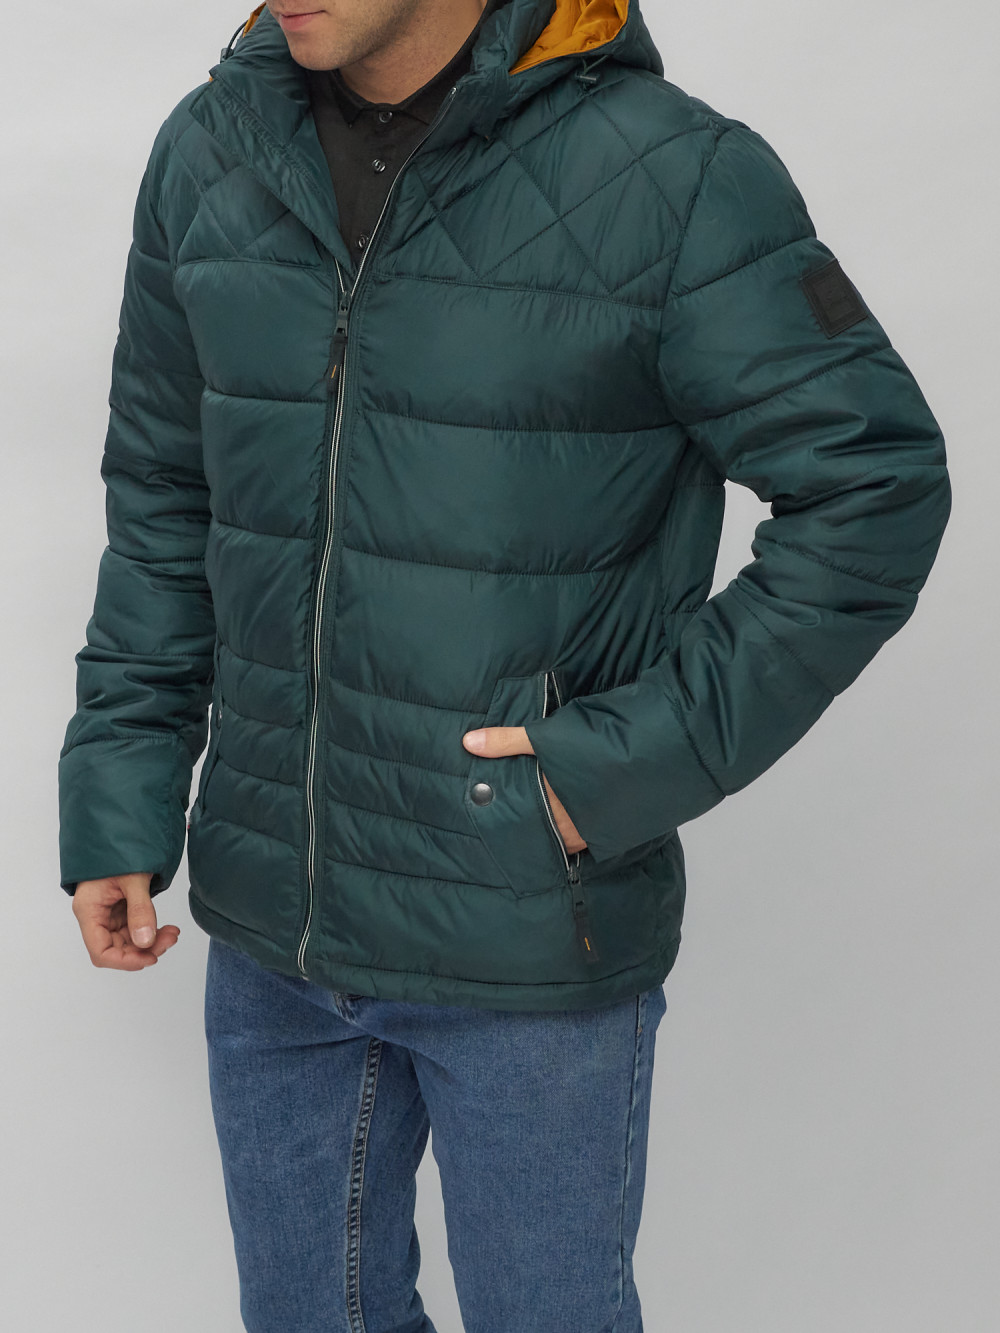 Купить куртку мужскую спортивную весеннюю оптом от производителя недорого в Москве 62179TZ 1